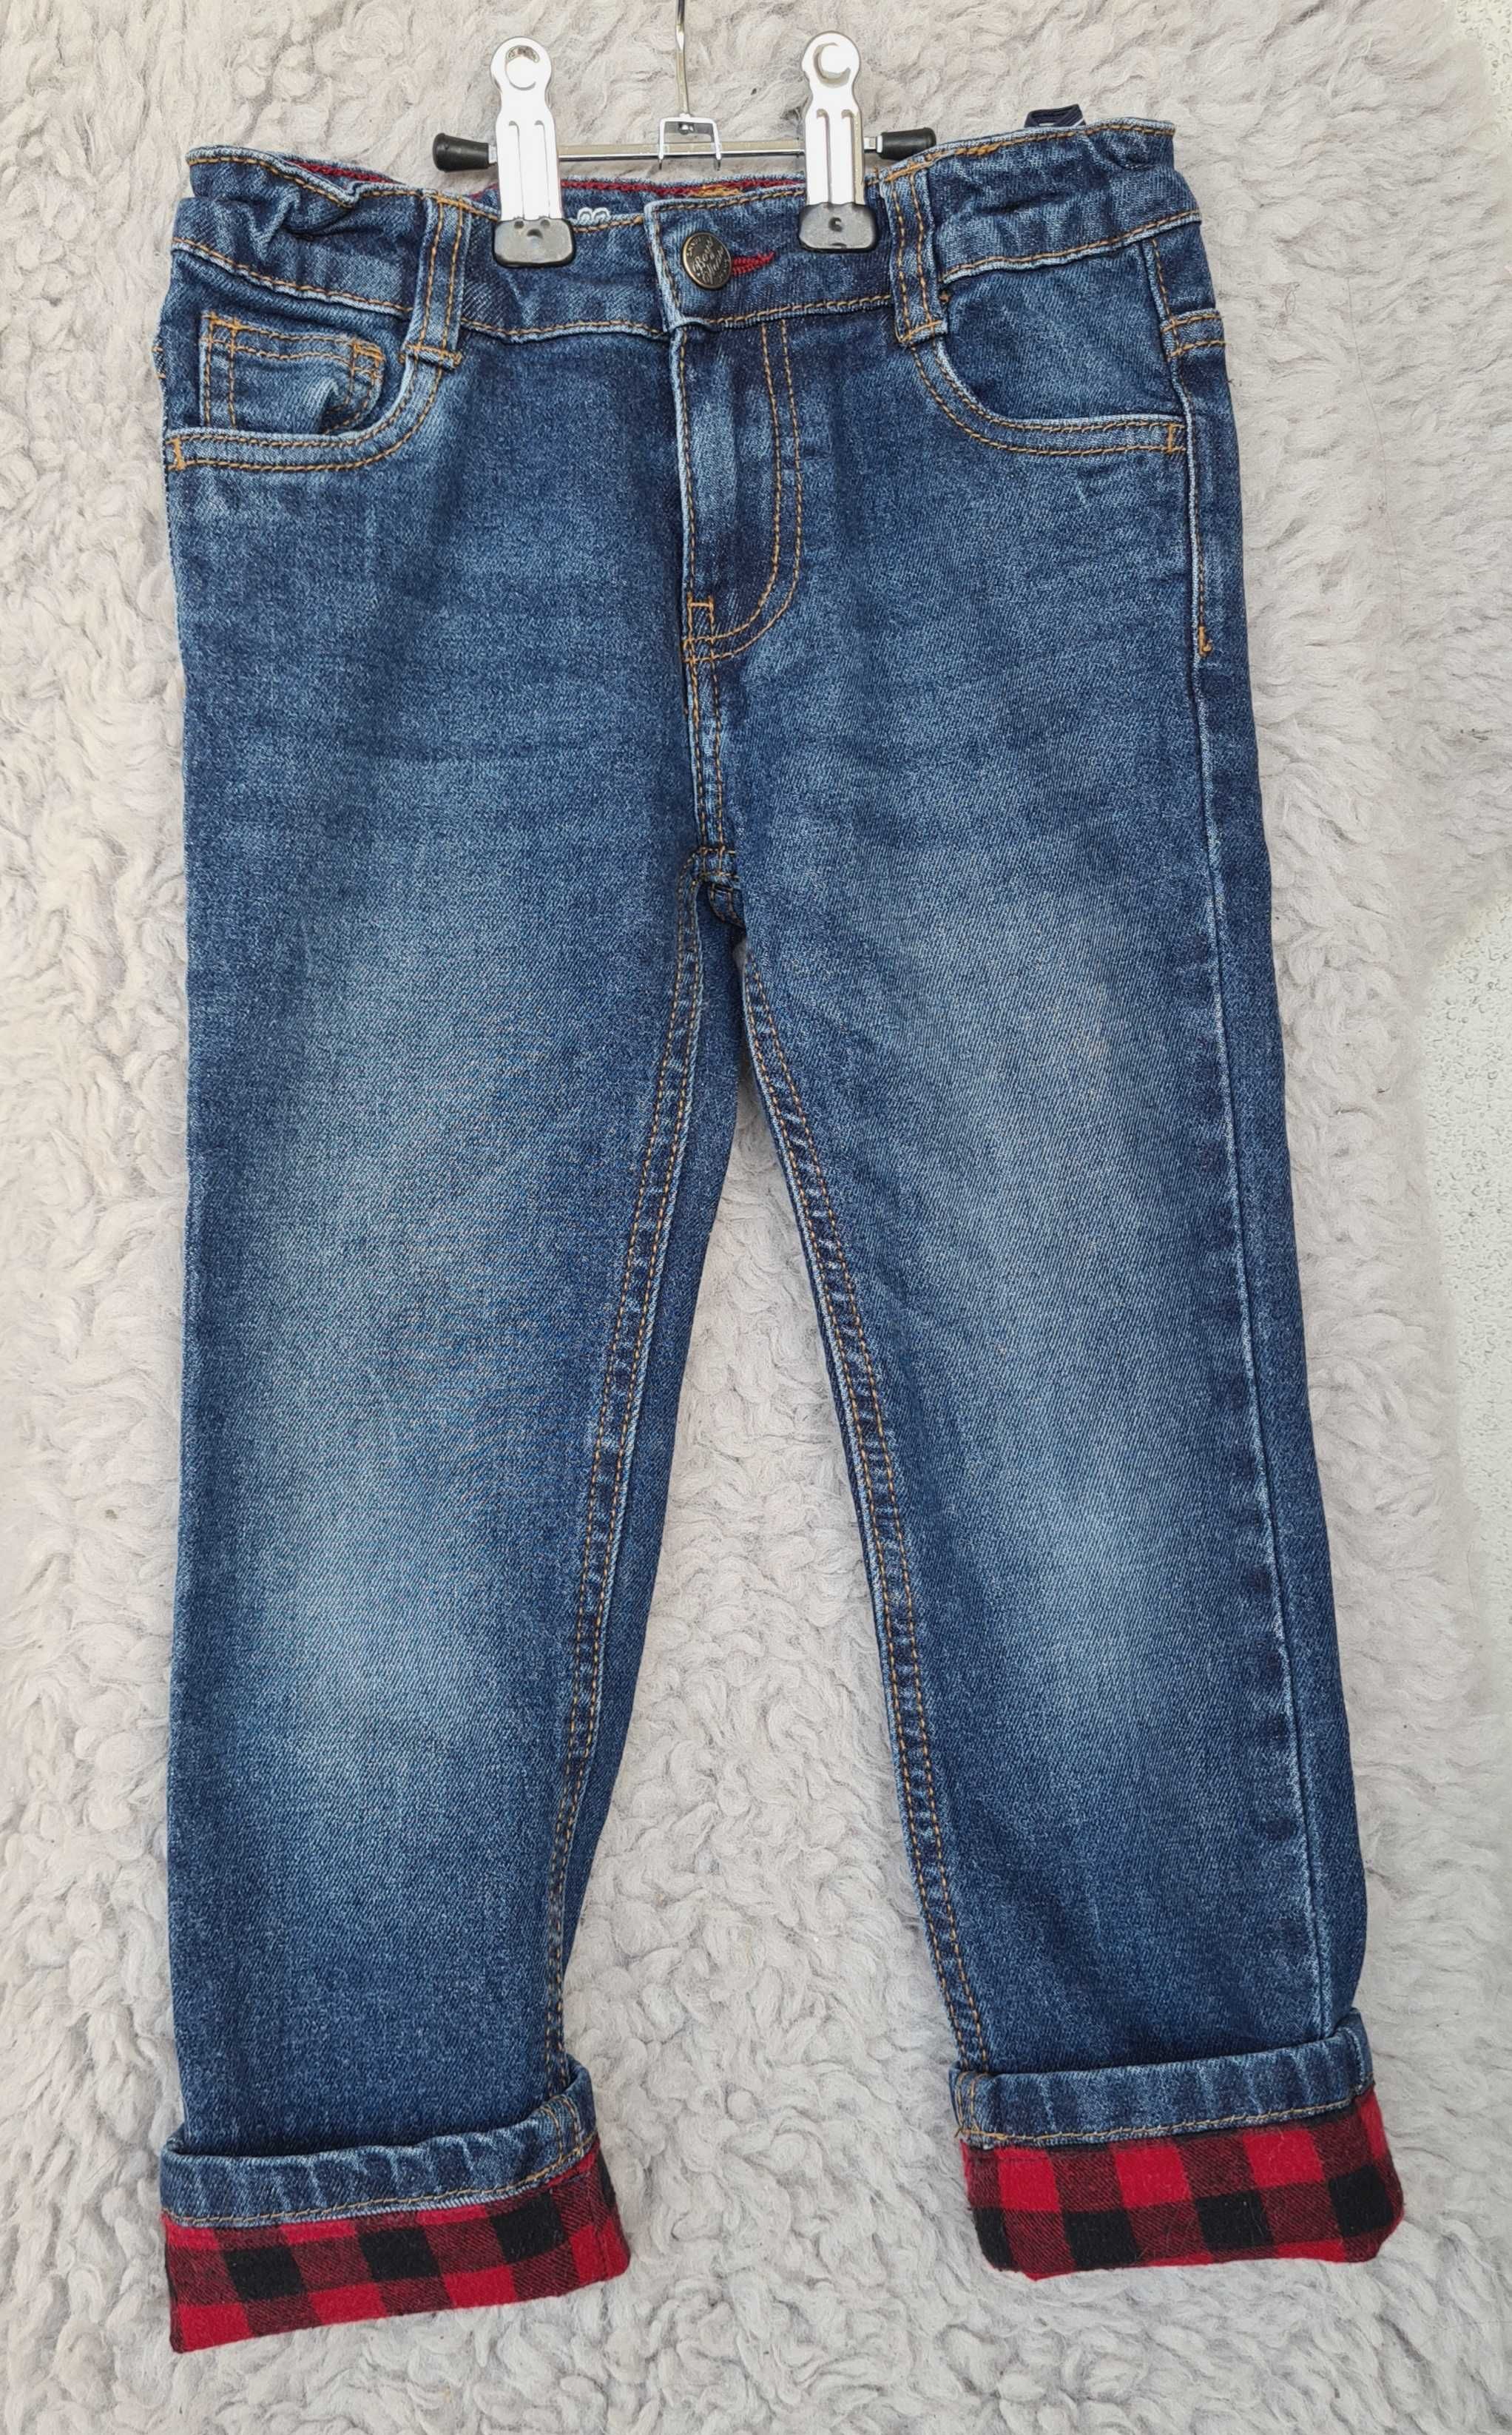 Spodnie jeansowe roz 110 / 4 - 5 lat